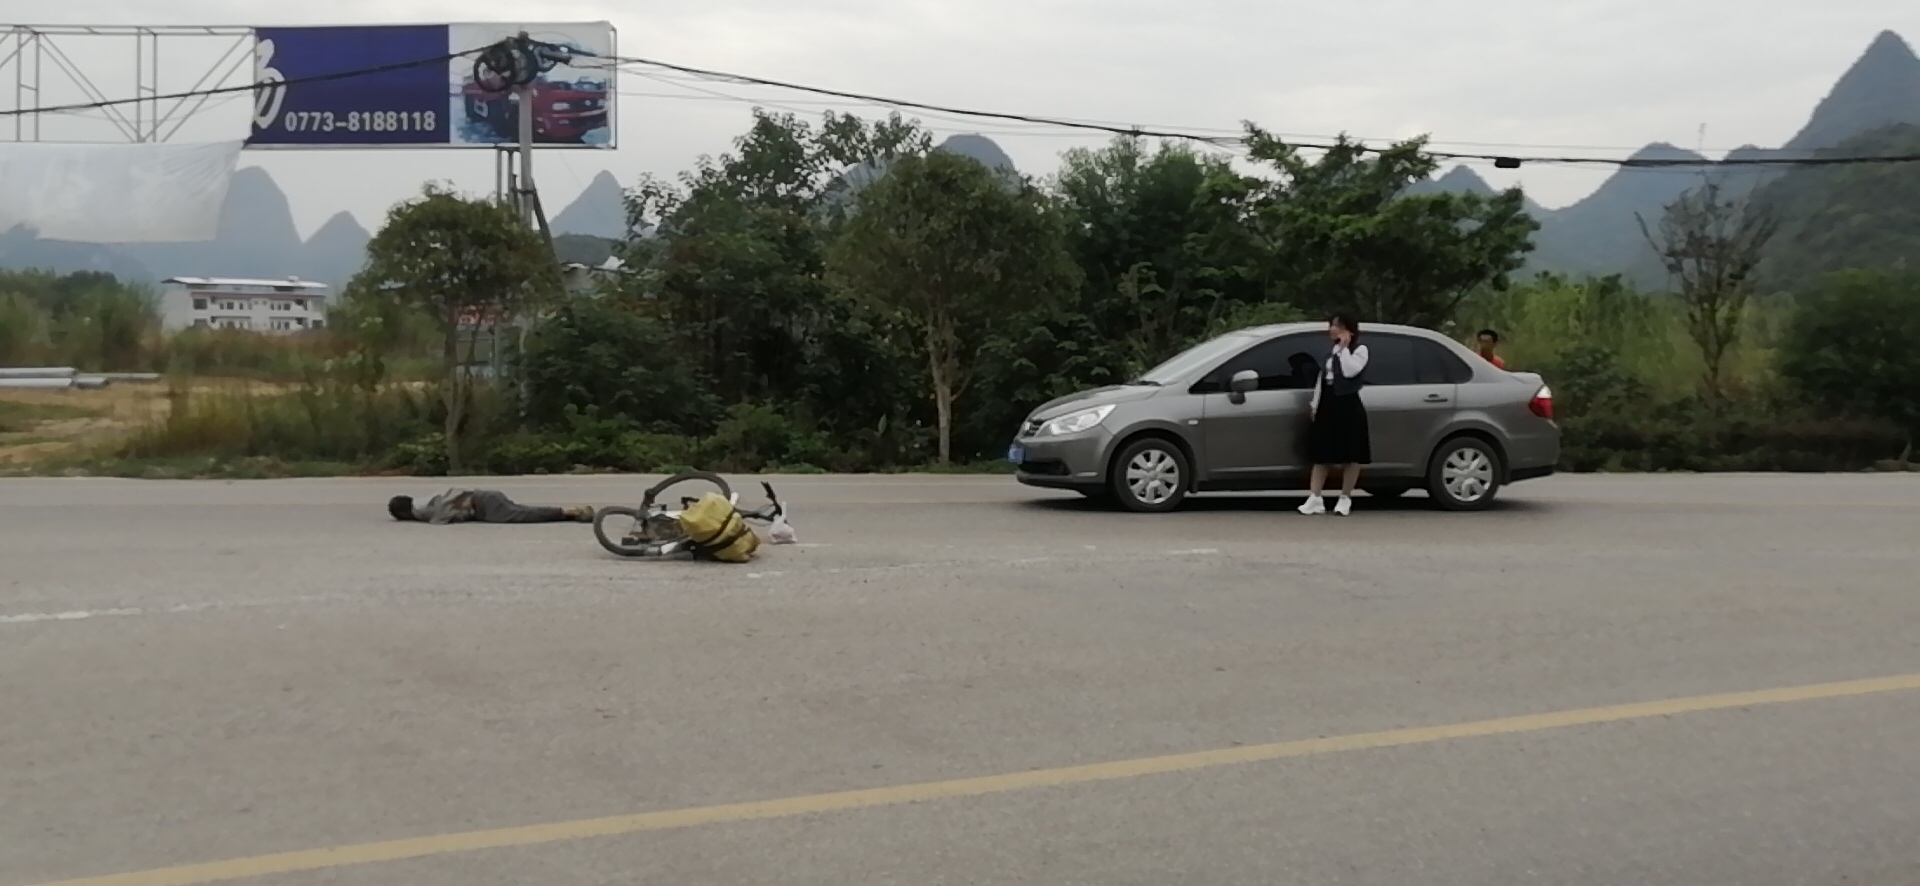 新街加油站旁边，小车和单车撞上了！157 / 作者:狭缝求生室 / 帖子ID:269297